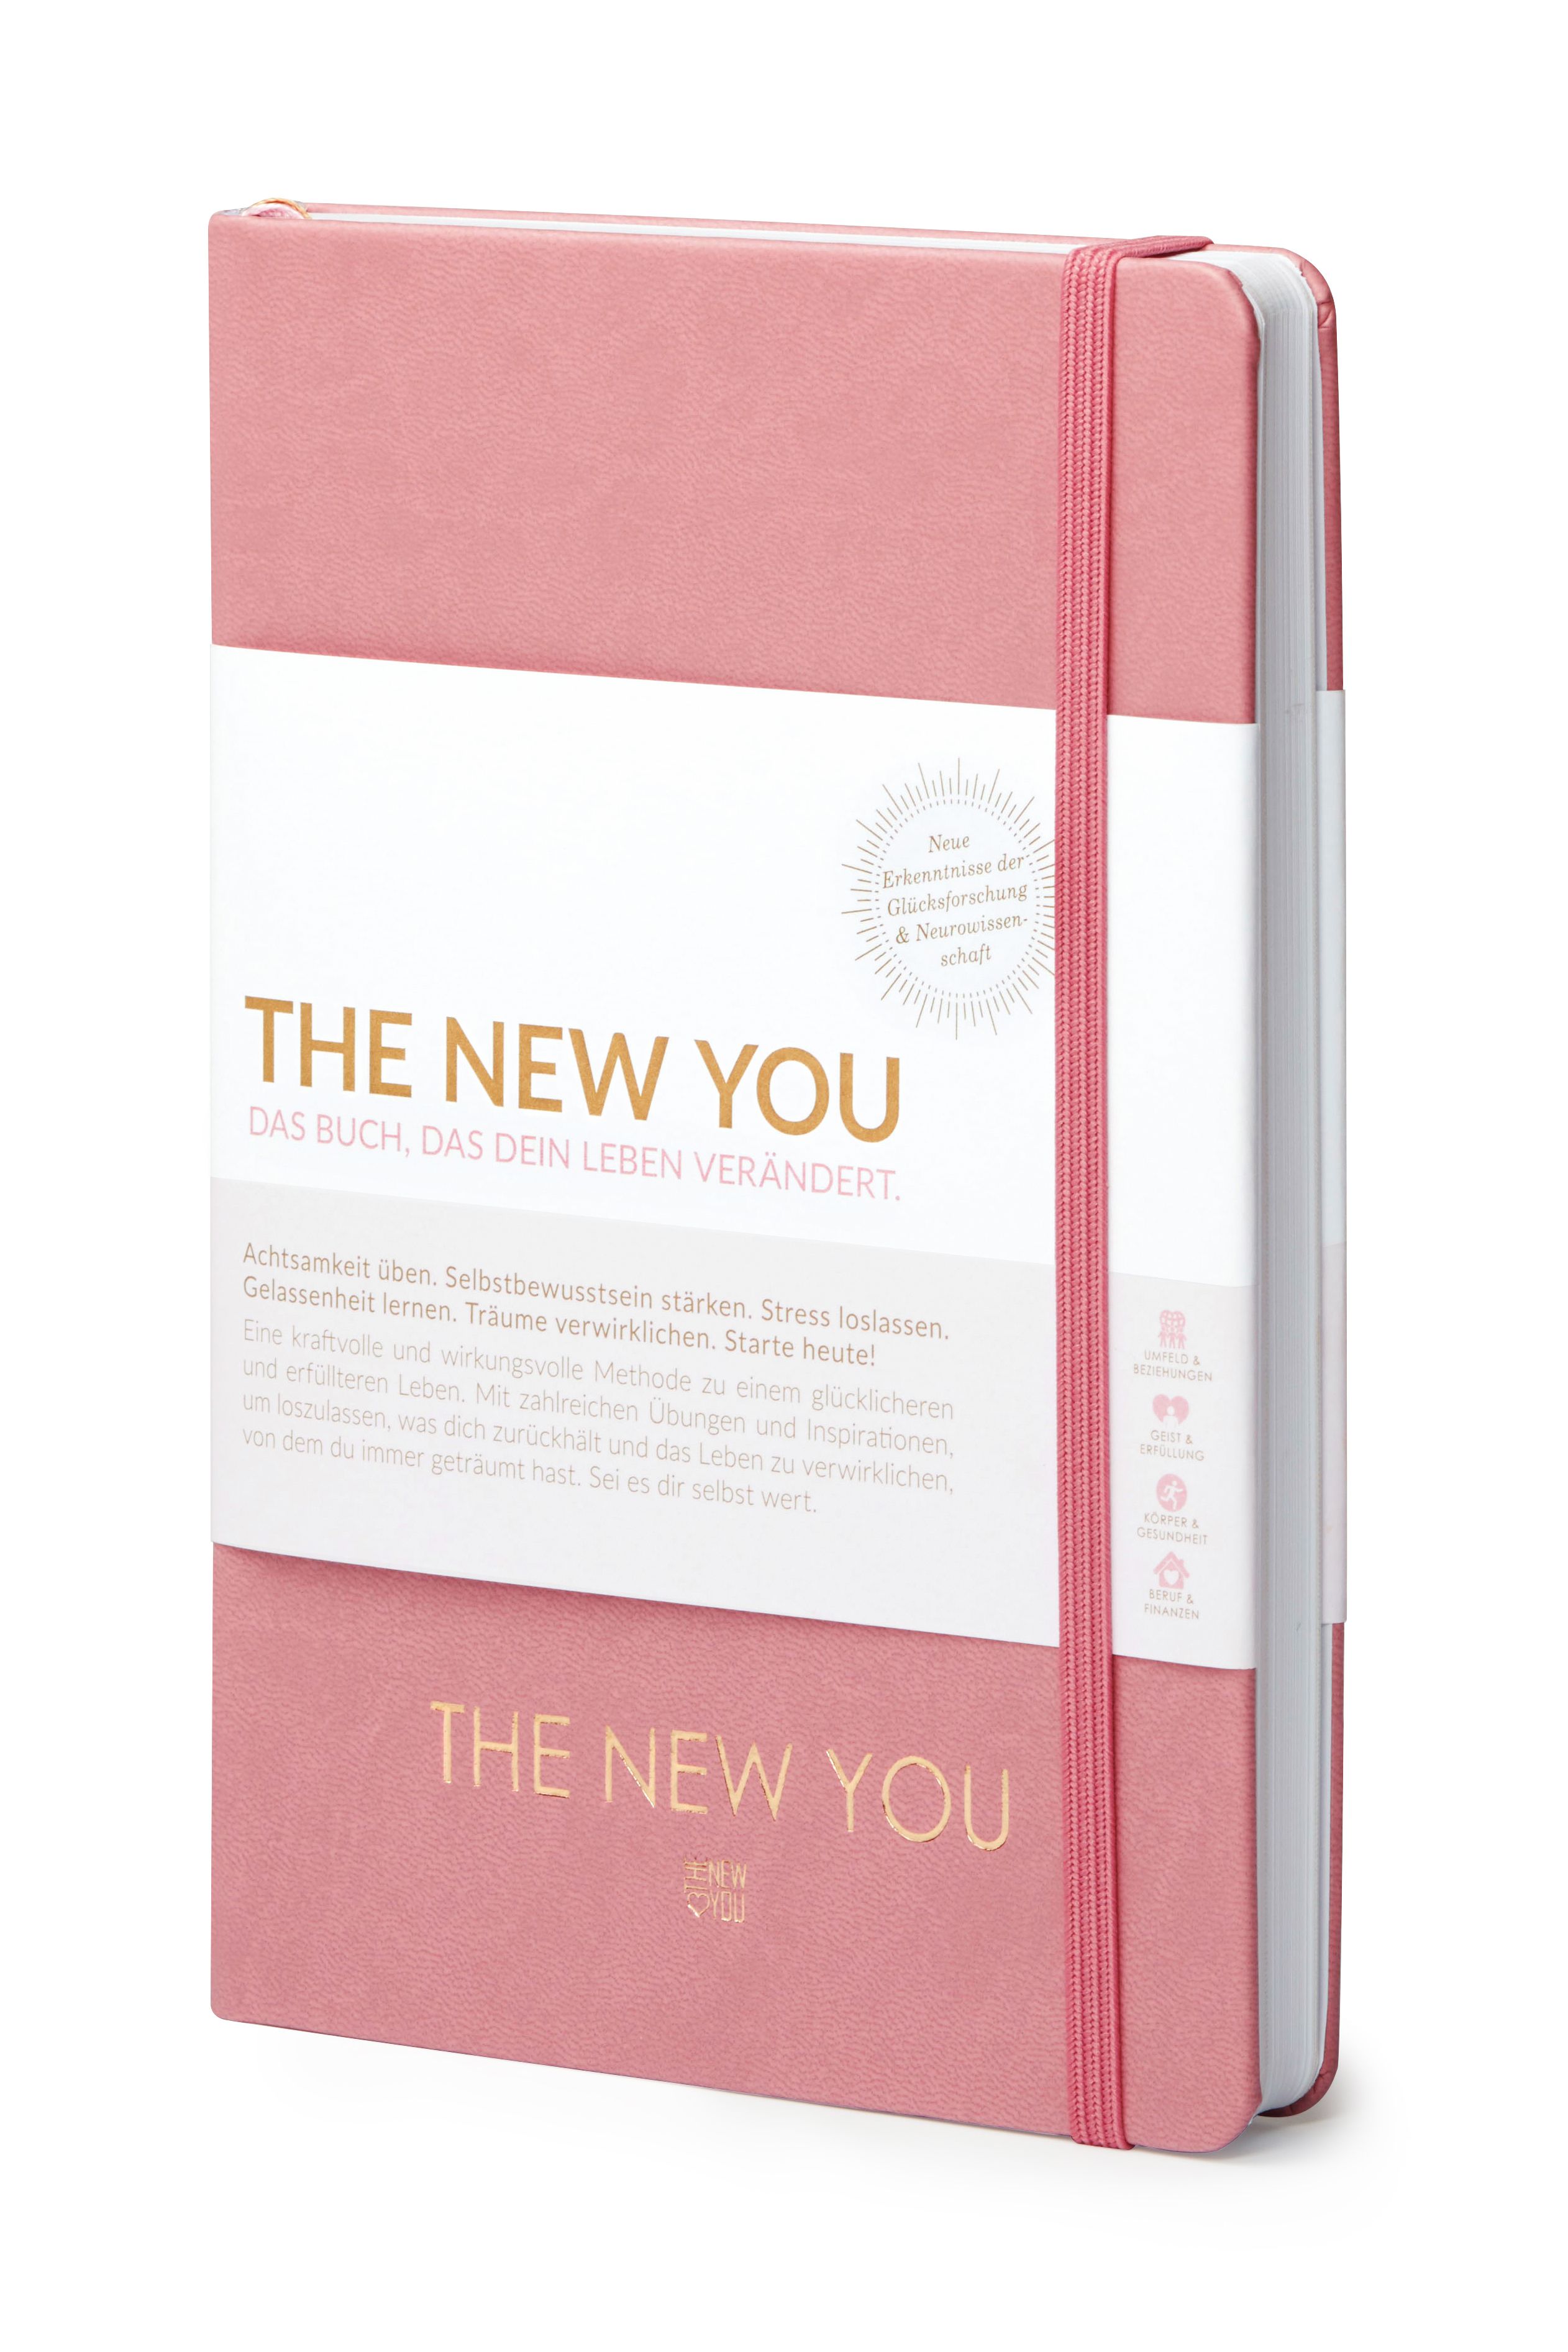 THE NEW YOU (rosa) - Das Buch, das dein Leben verändert.